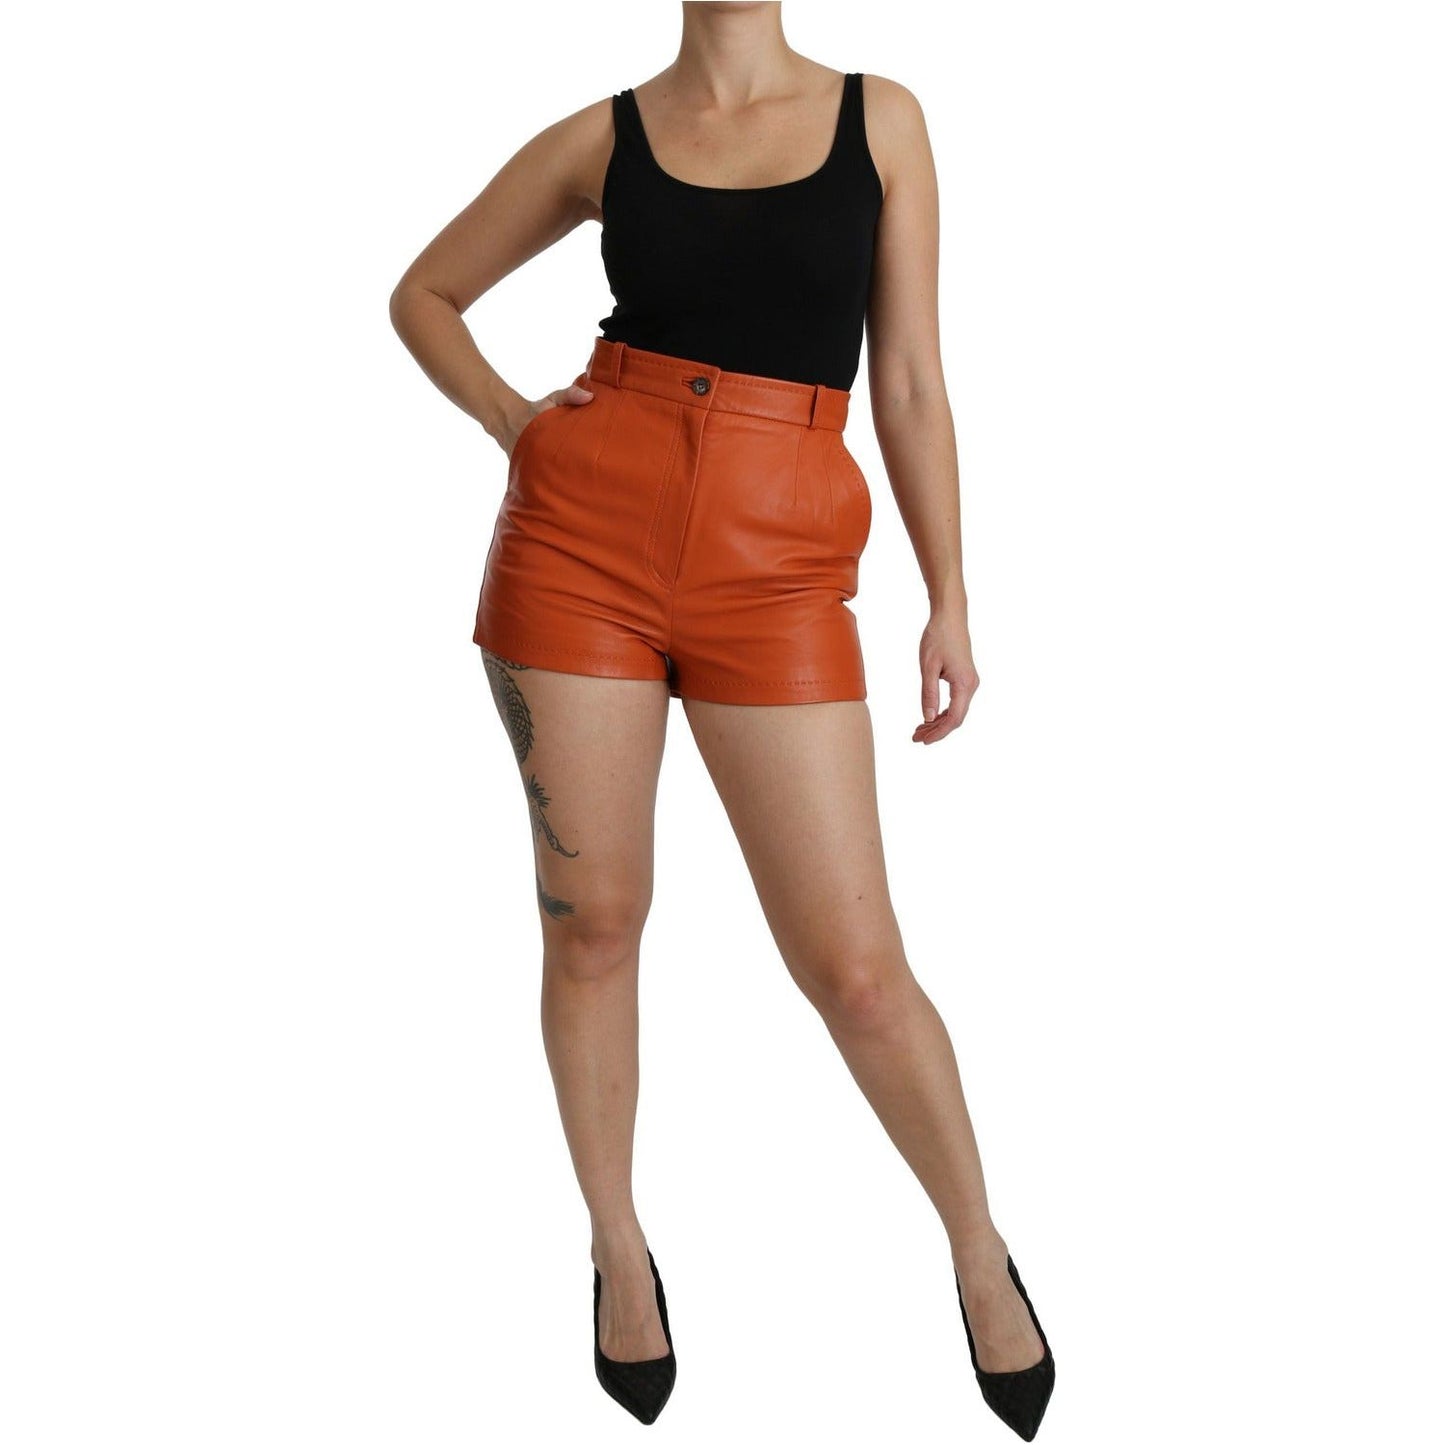 Dolce & Gabbana Chic Orange Leather High Waist Hot Pants Shorts orange-leather-high-waist-hot-pants-shorts